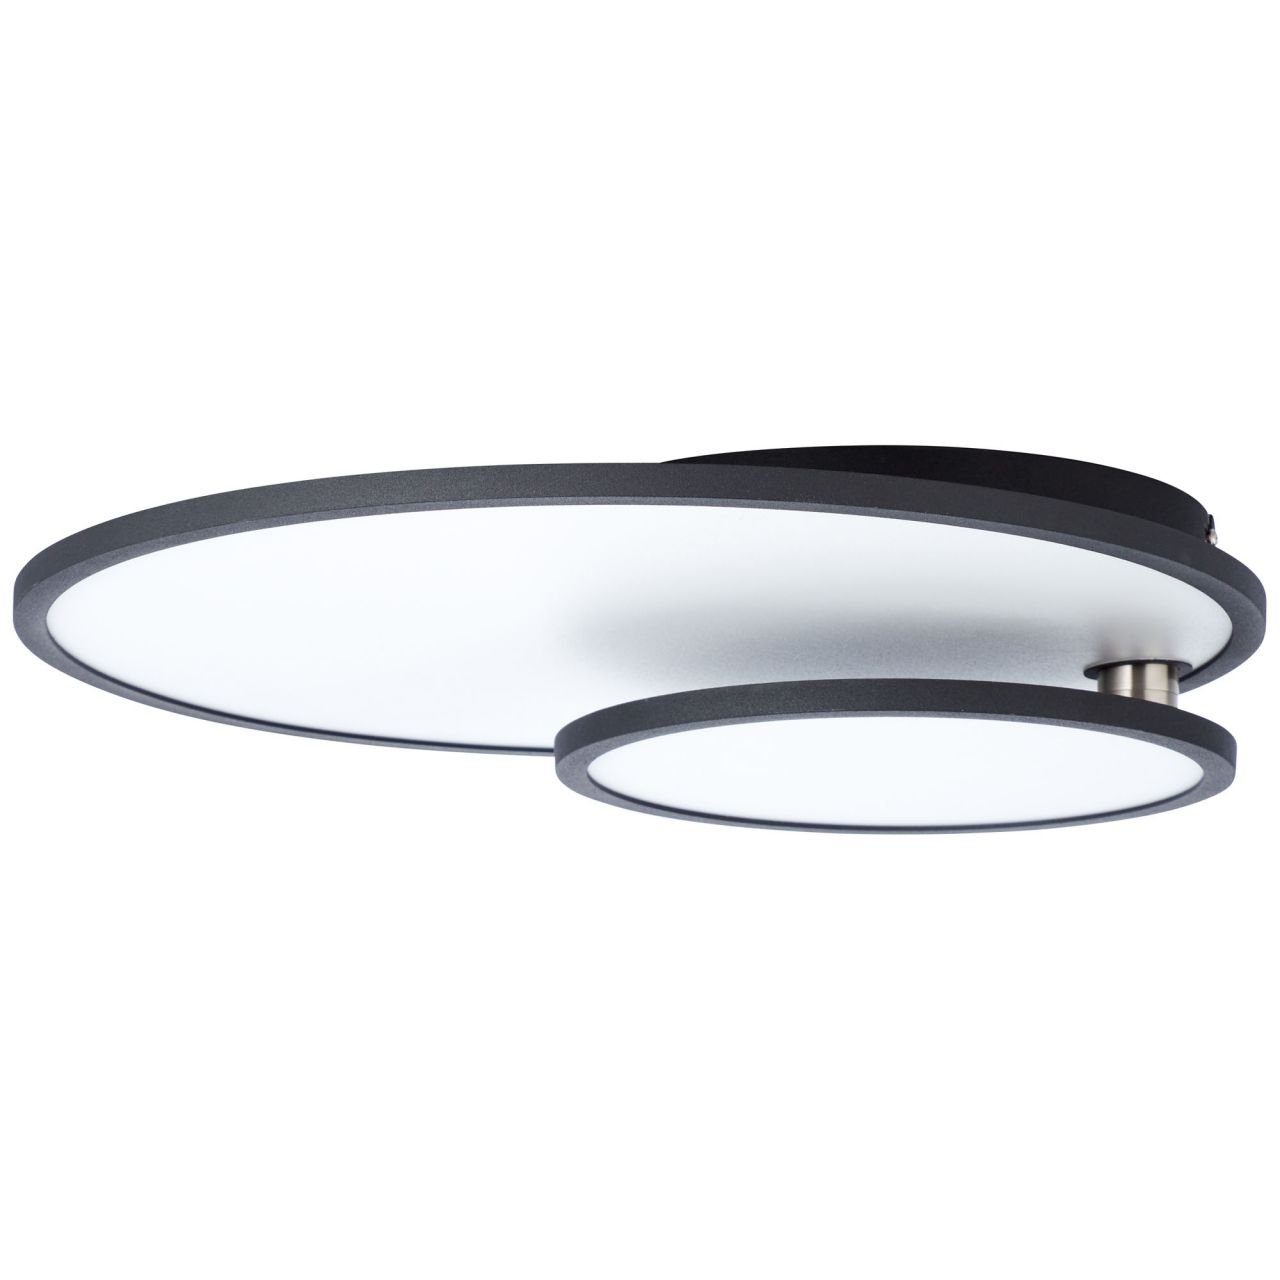 Brilliant Aufbauleuchte Bility, Bility LED Deckenaufbau-Paneel 1x Lampe easyDim schwarz/weiß 61x45cm 3000K